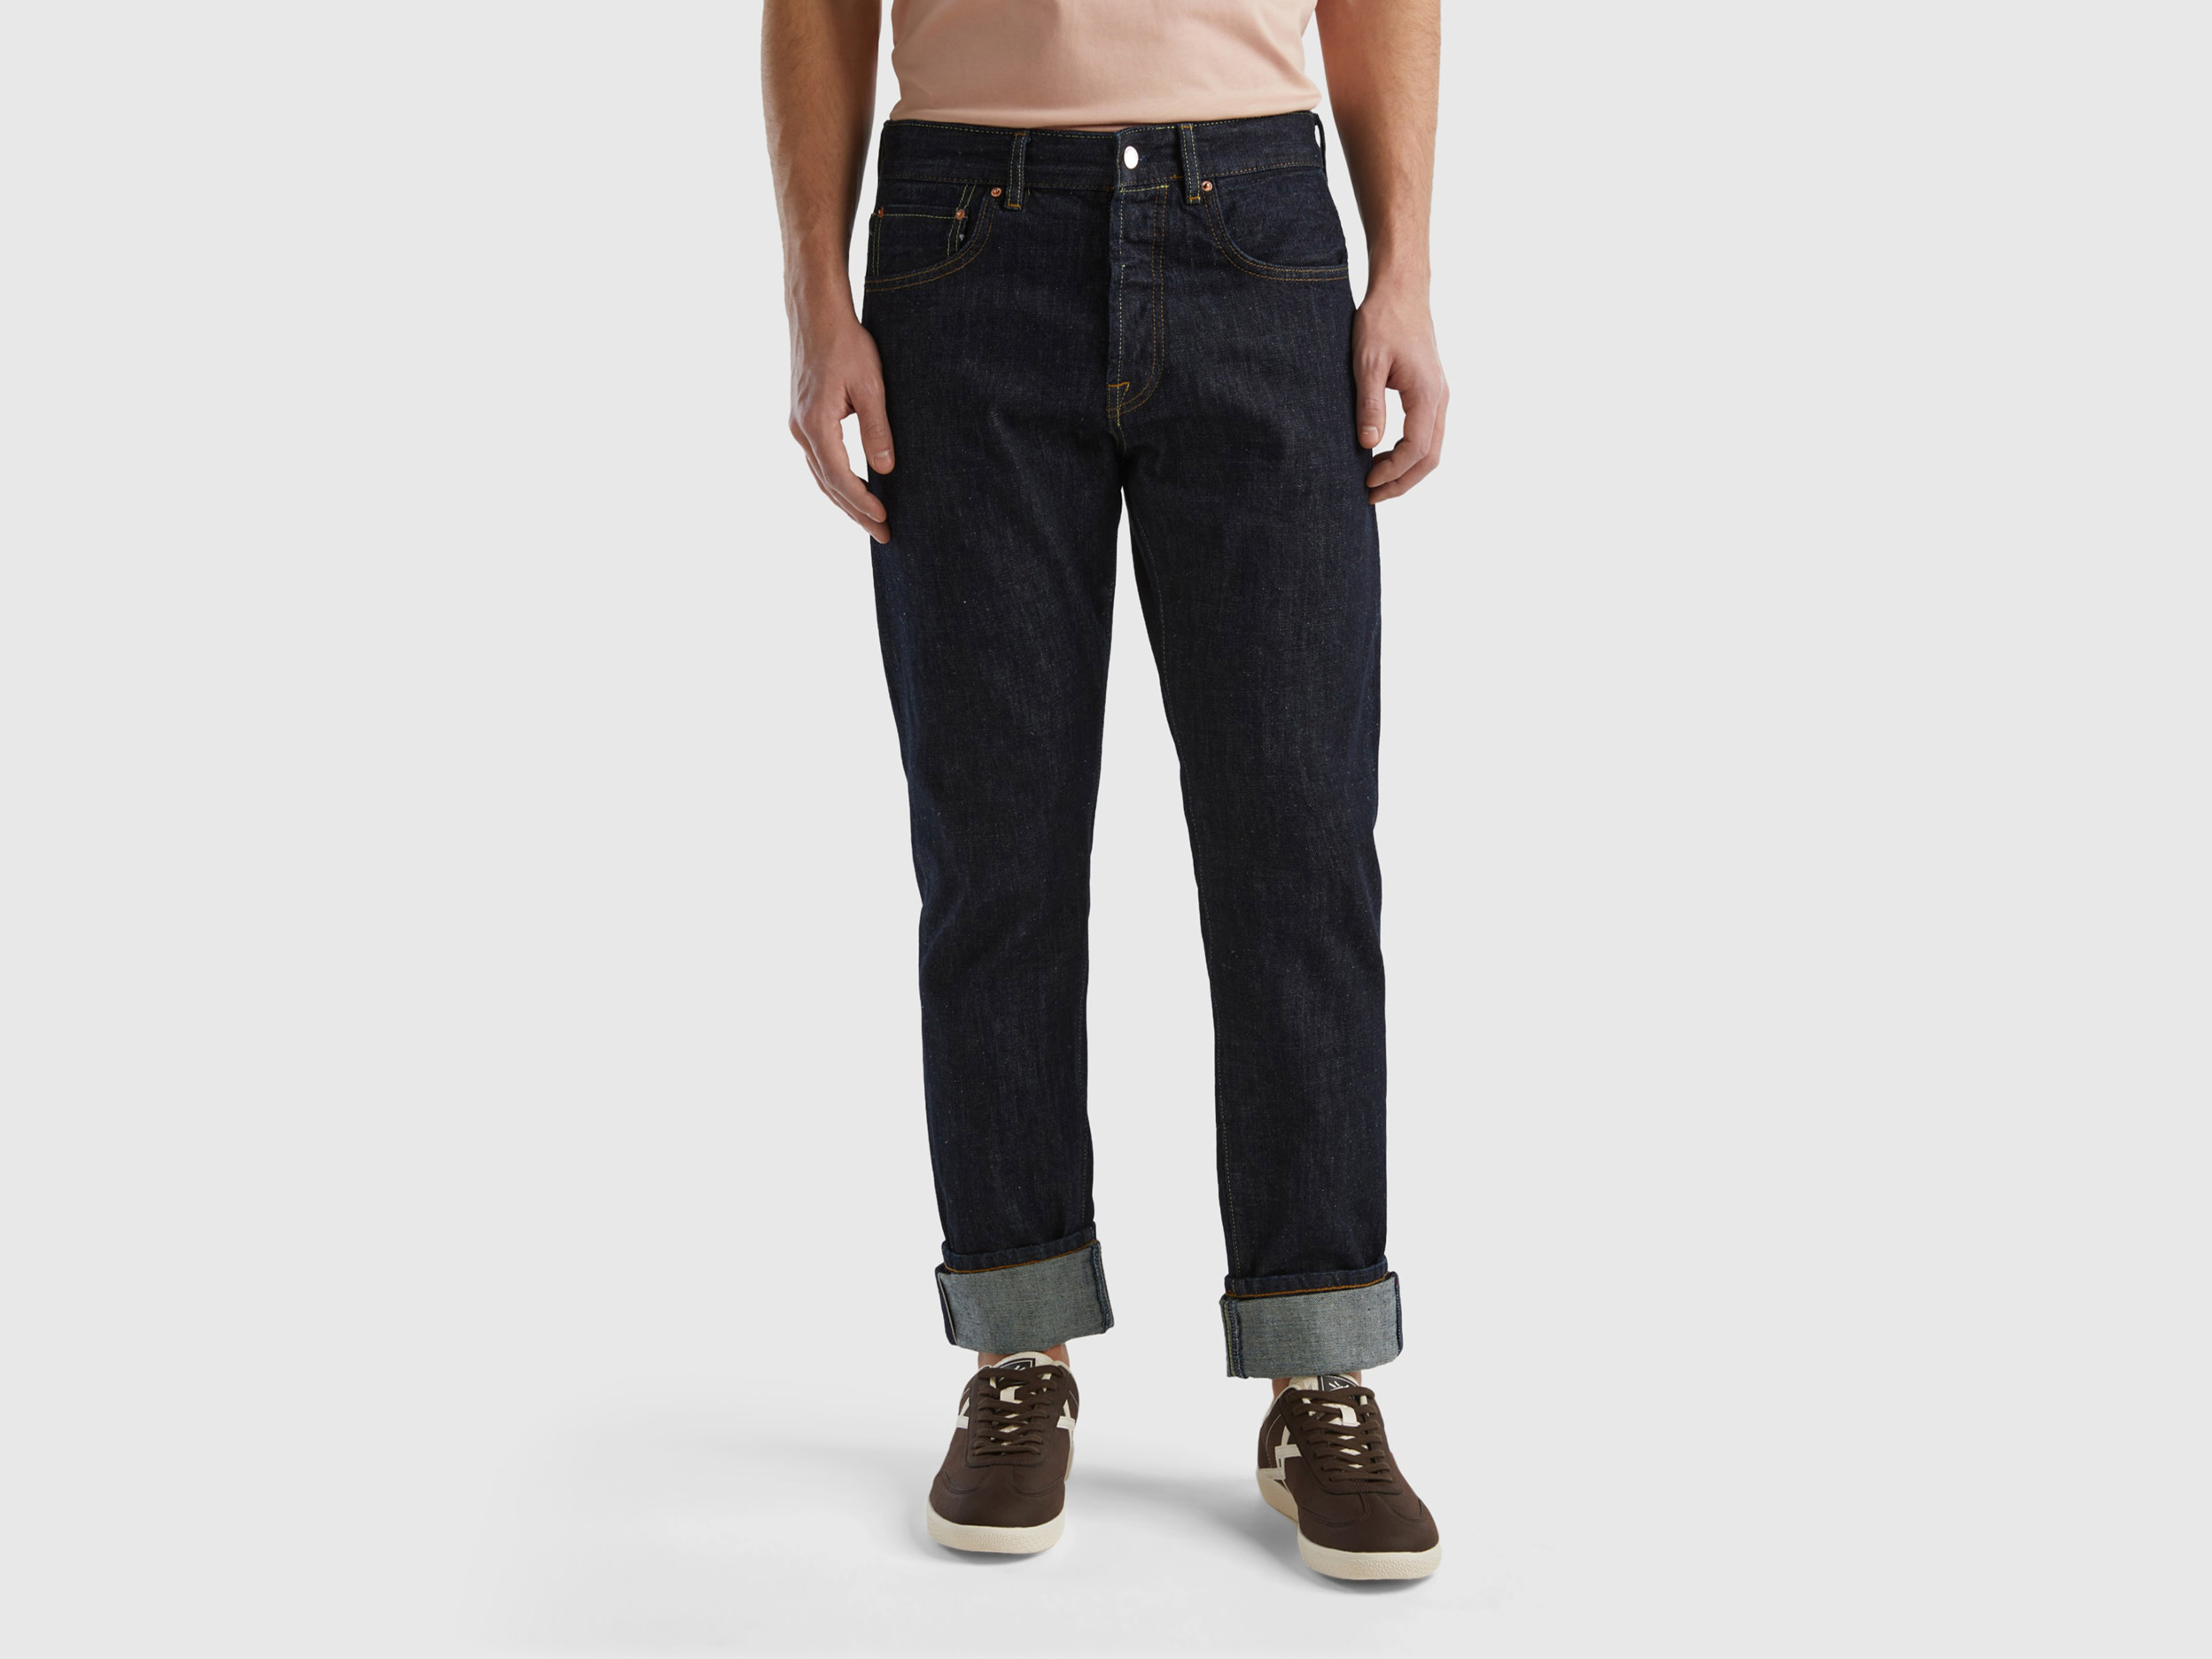 Benetton, Selvedge Denim Jeans, size 36, Black, Men